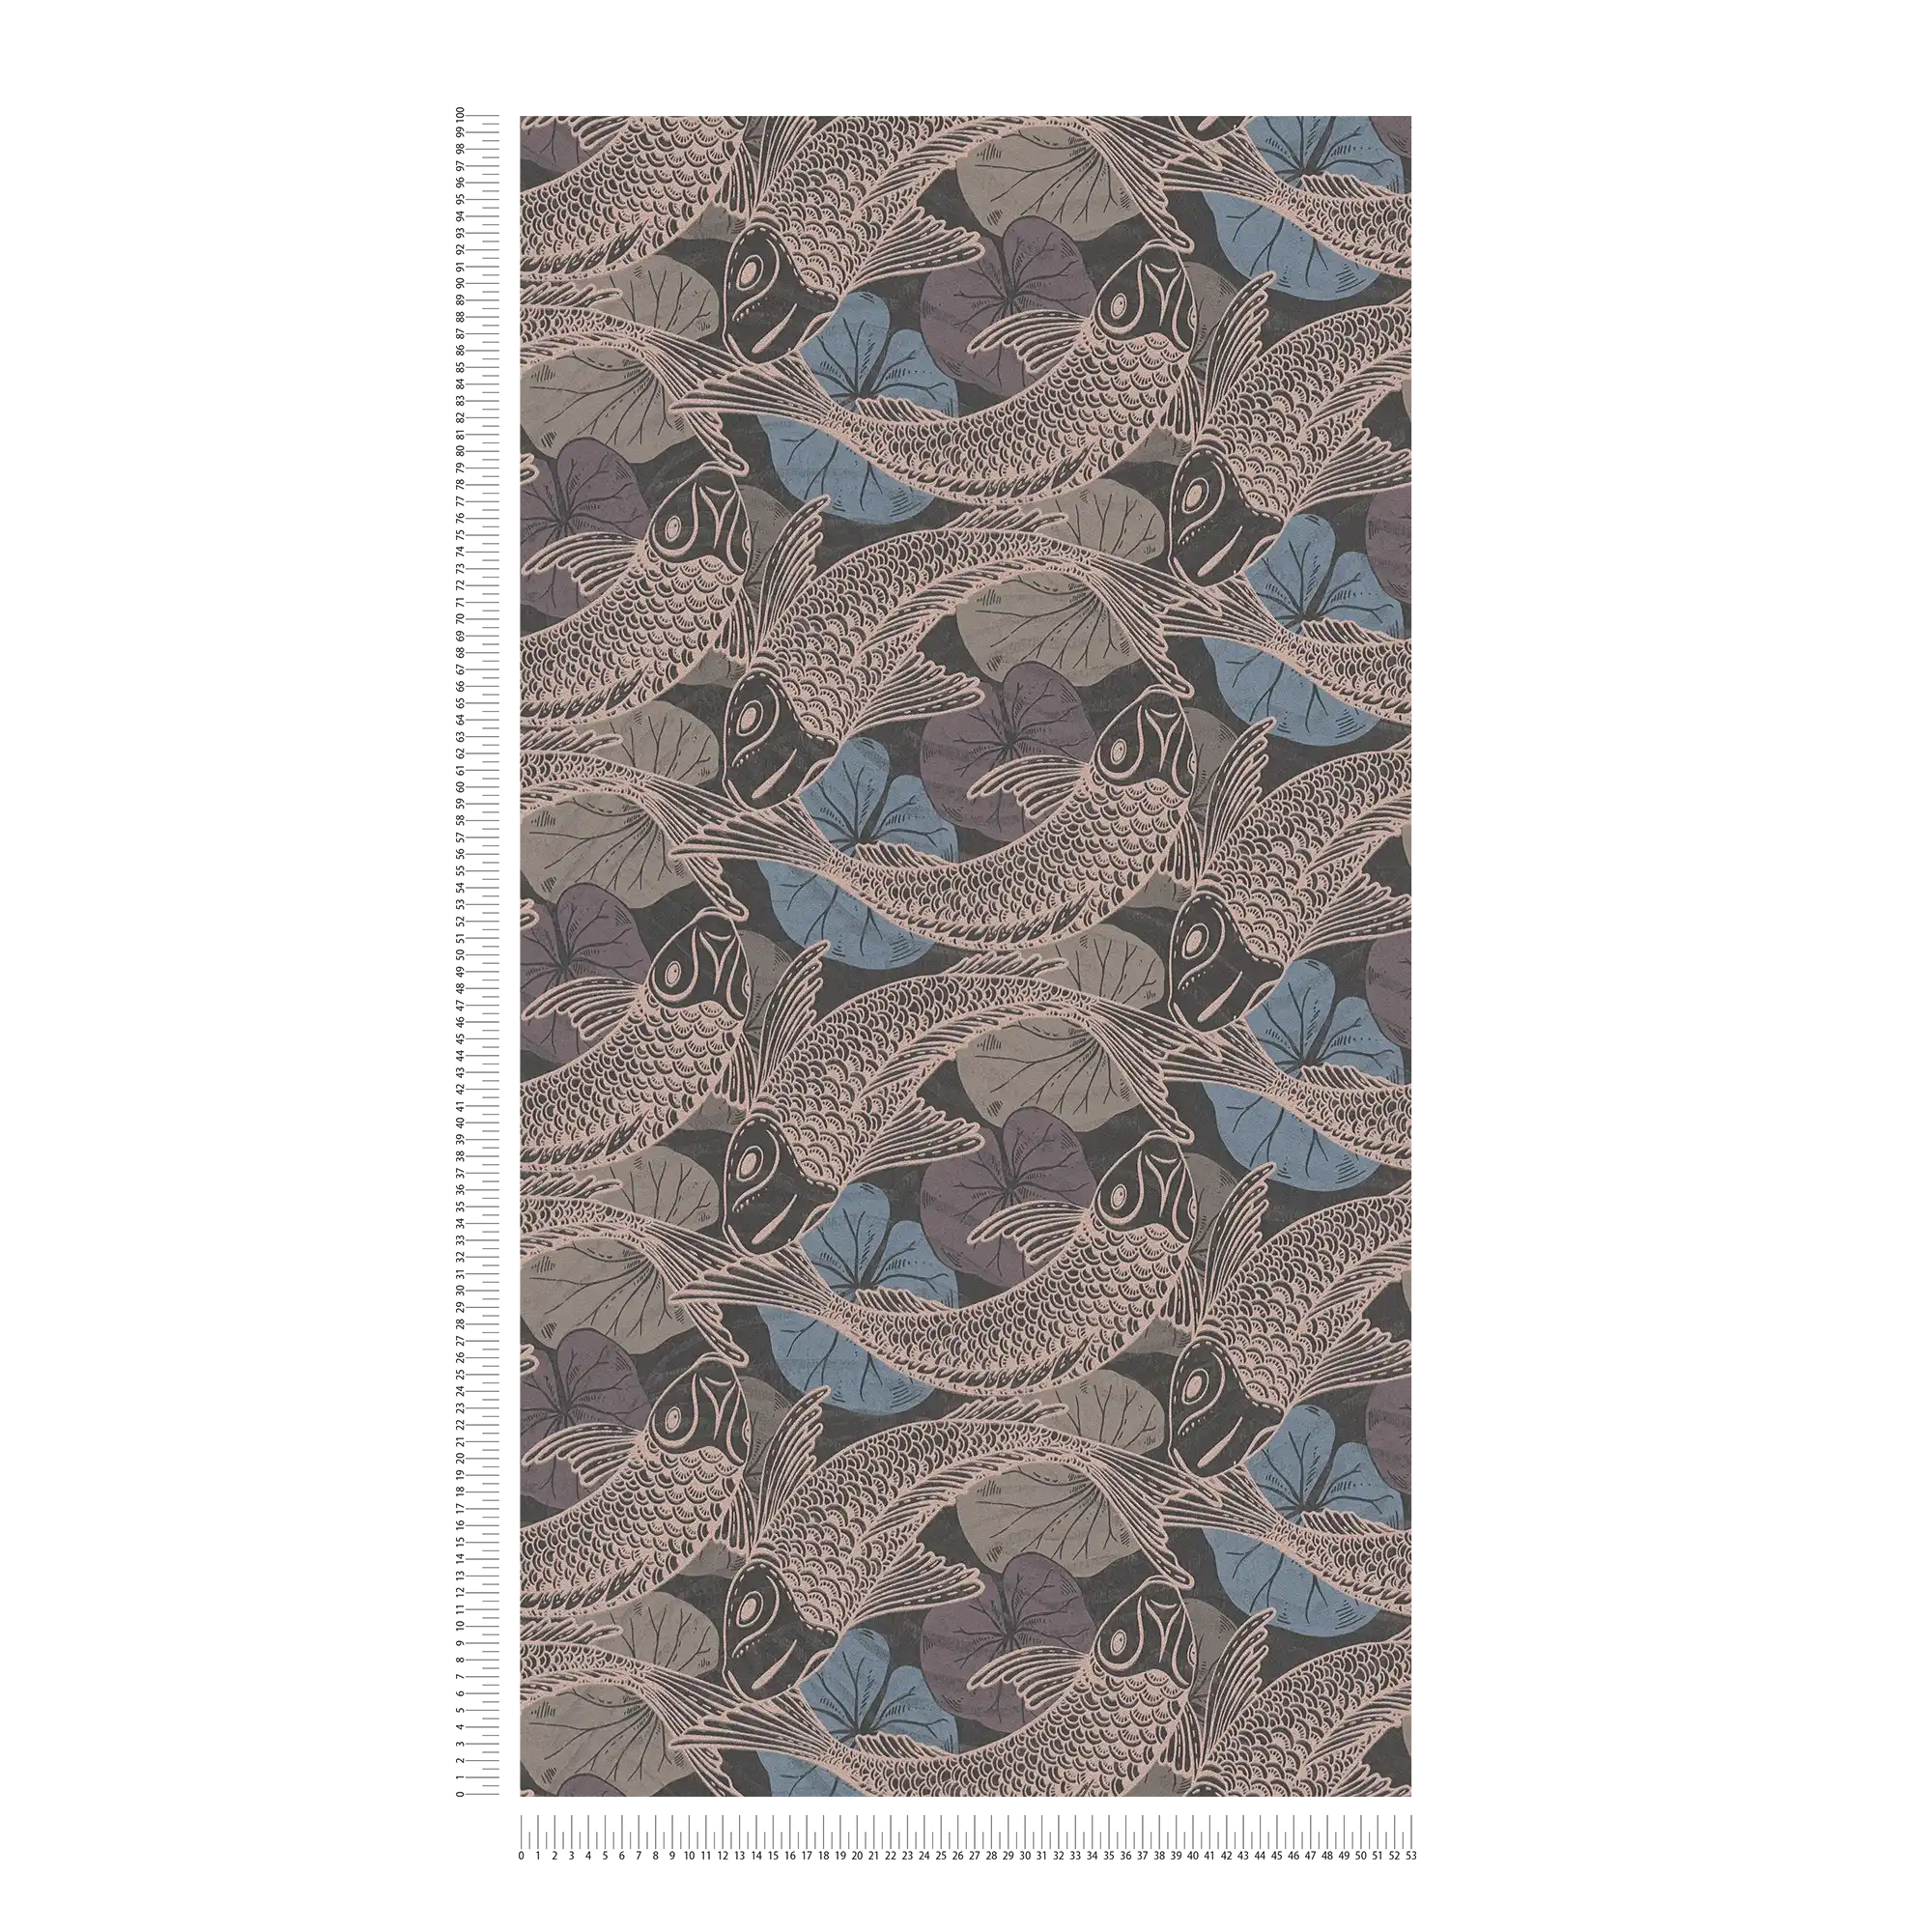             Carta da parati in tessuto non tessuto con disegno Koi asiatico ed effetto metallizzato - blu, metallizzato, nero
        